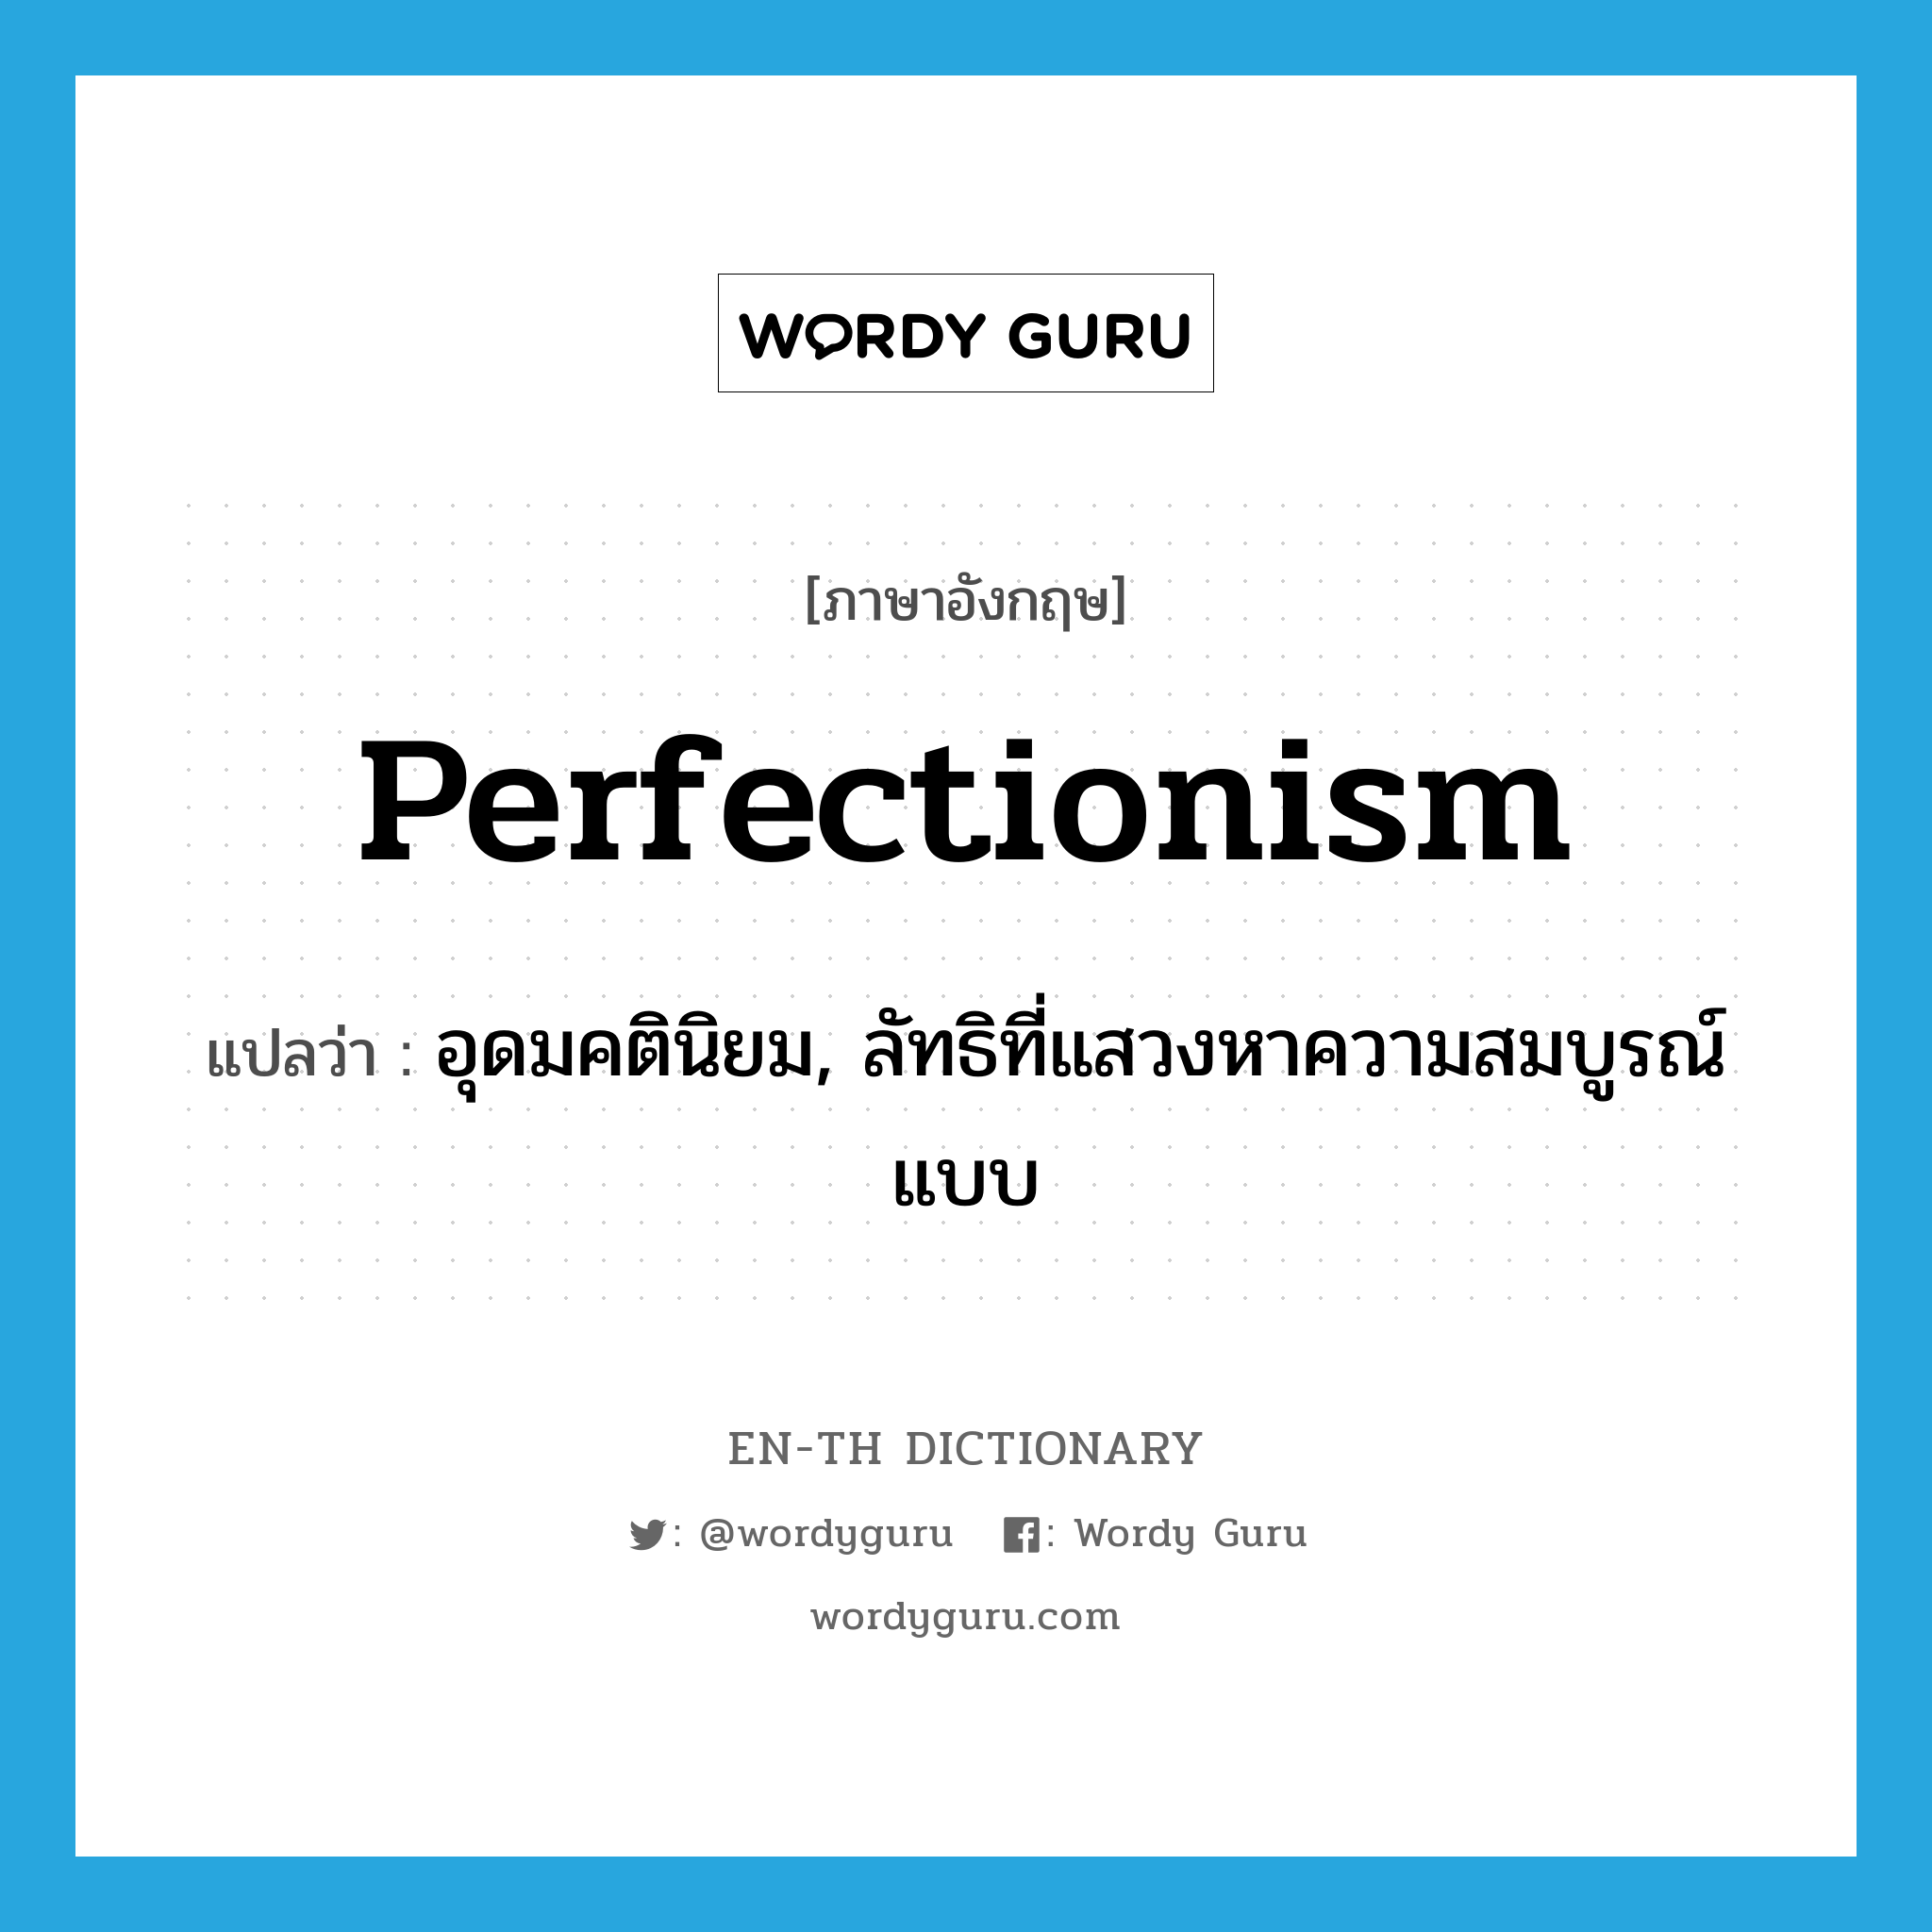 อุดมคตินิยม, ลัทธิที่แสวงหาความสมบูรณ์แบบ ภาษาอังกฤษ?, คำศัพท์ภาษาอังกฤษ อุดมคตินิยม, ลัทธิที่แสวงหาความสมบูรณ์แบบ แปลว่า perfectionism ประเภท N หมวด N